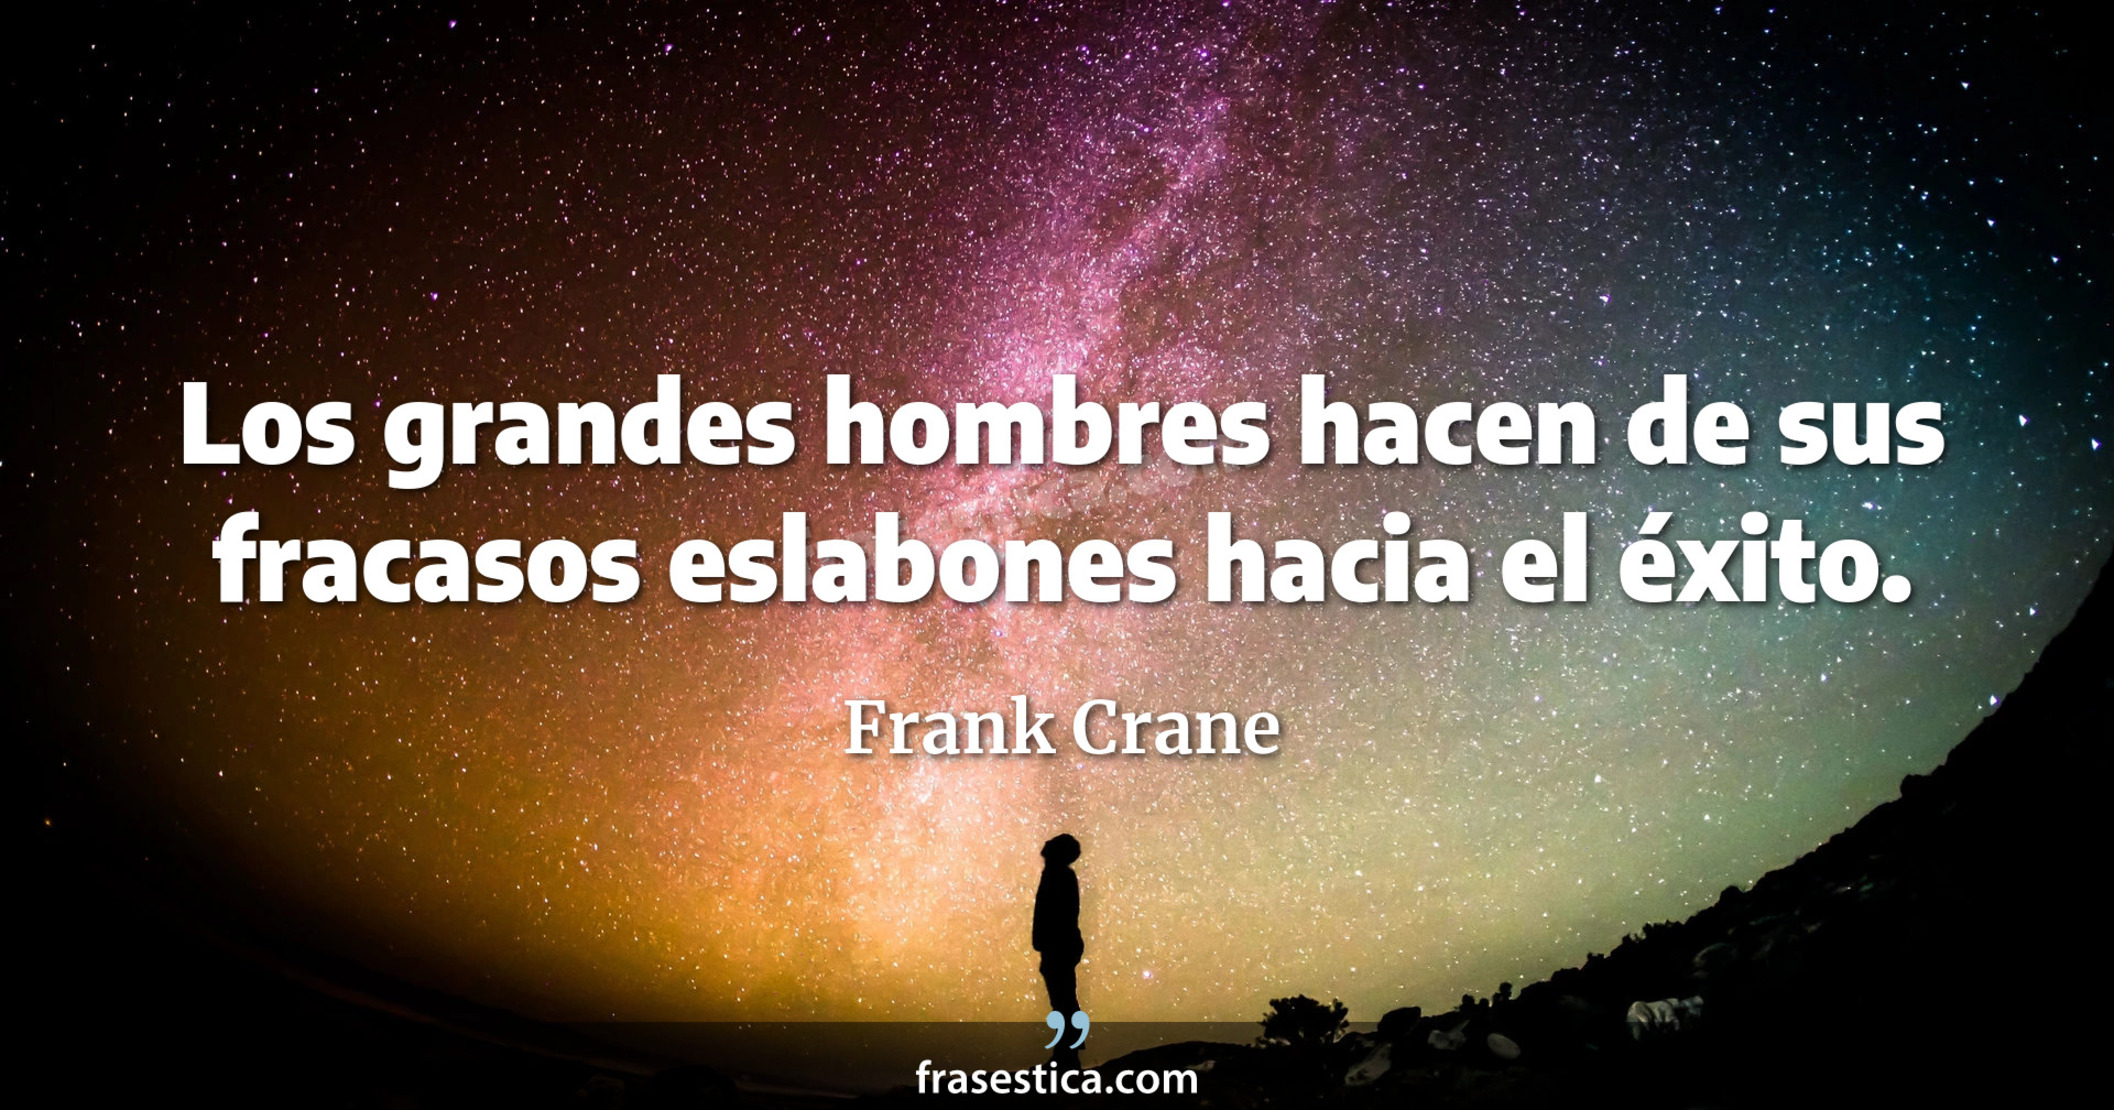 Los grandes hombres hacen de sus fracasos eslabones hacia el éxito. - Frank Crane